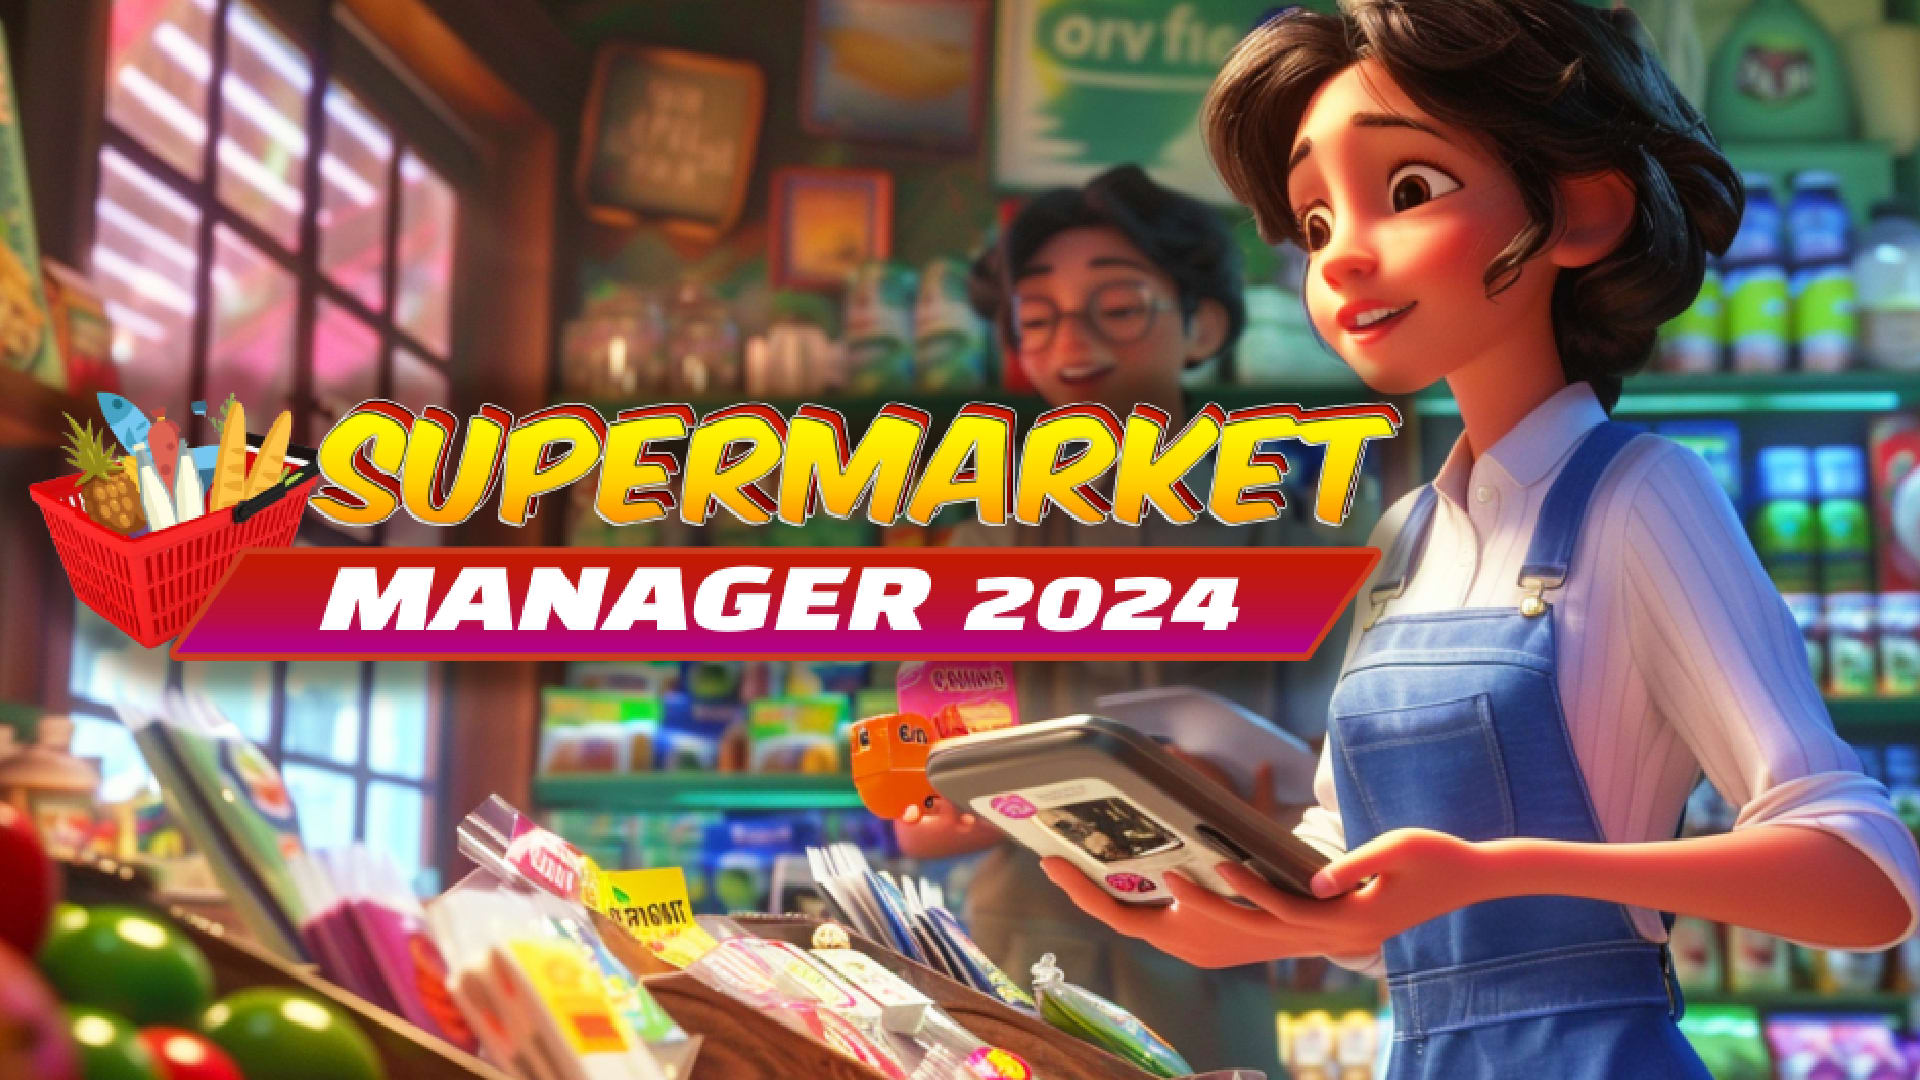 Supermarket Manager 2024